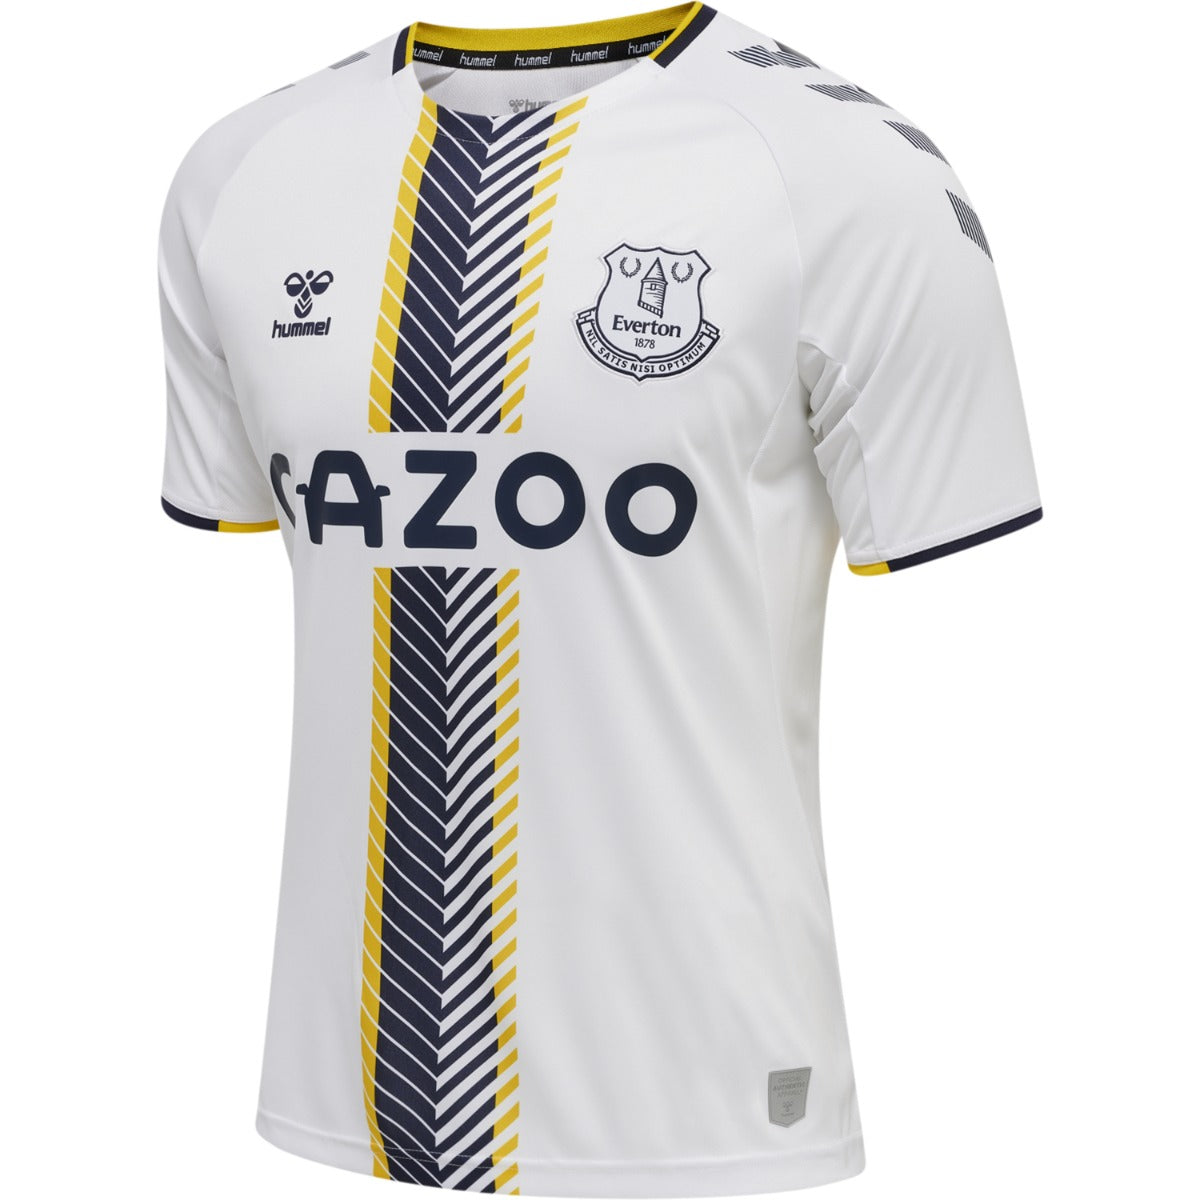 Hummel 2021-22 Everton Third Jersey - White-Black-Yellow (Diagonal)